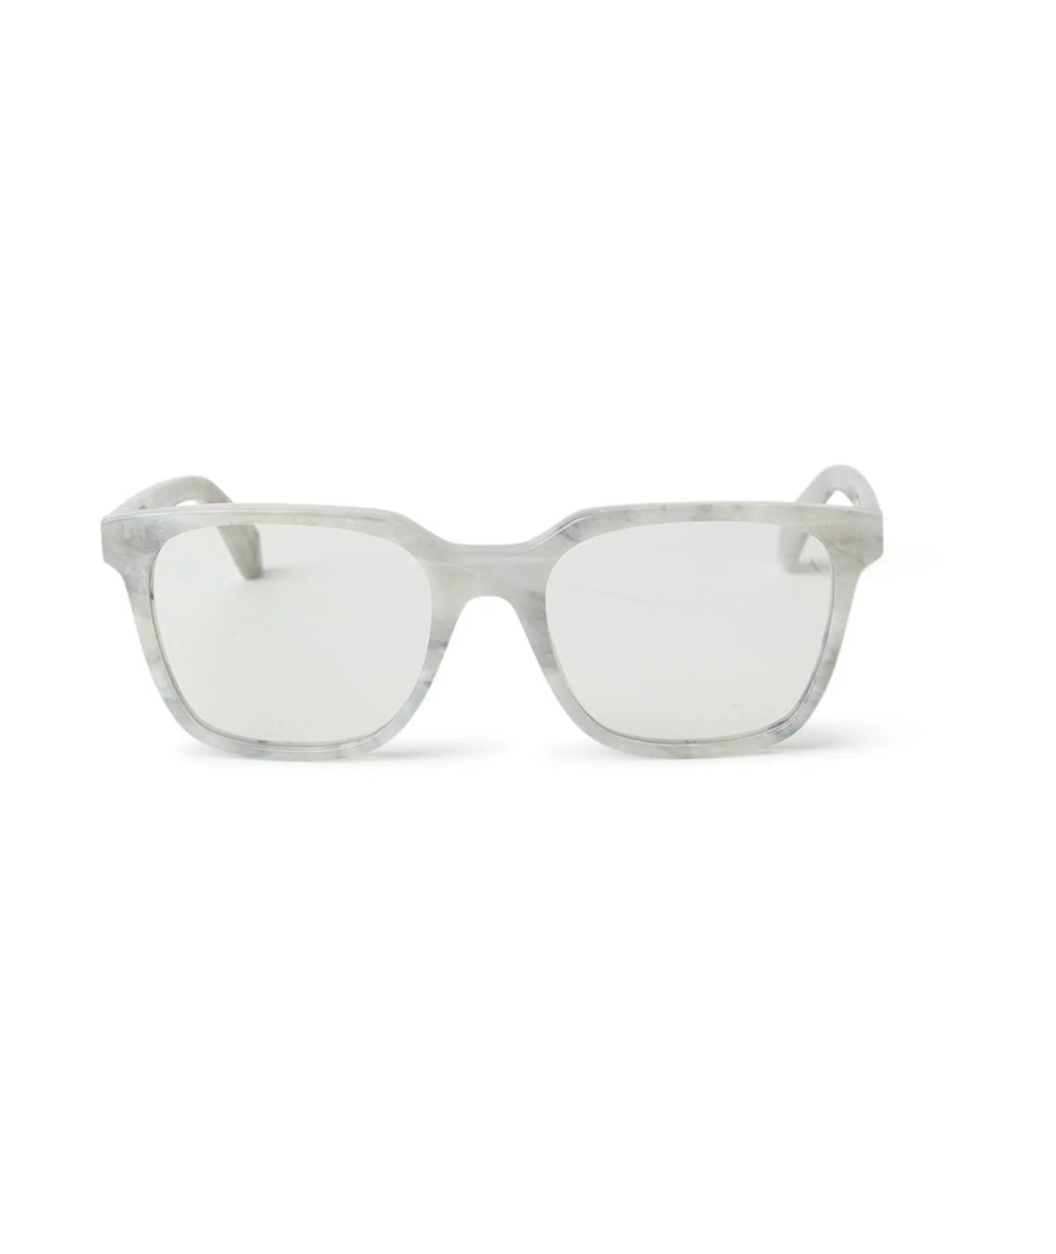 Off-White Style 38 Marble Blue Block Light 54mm New Eyeglasses